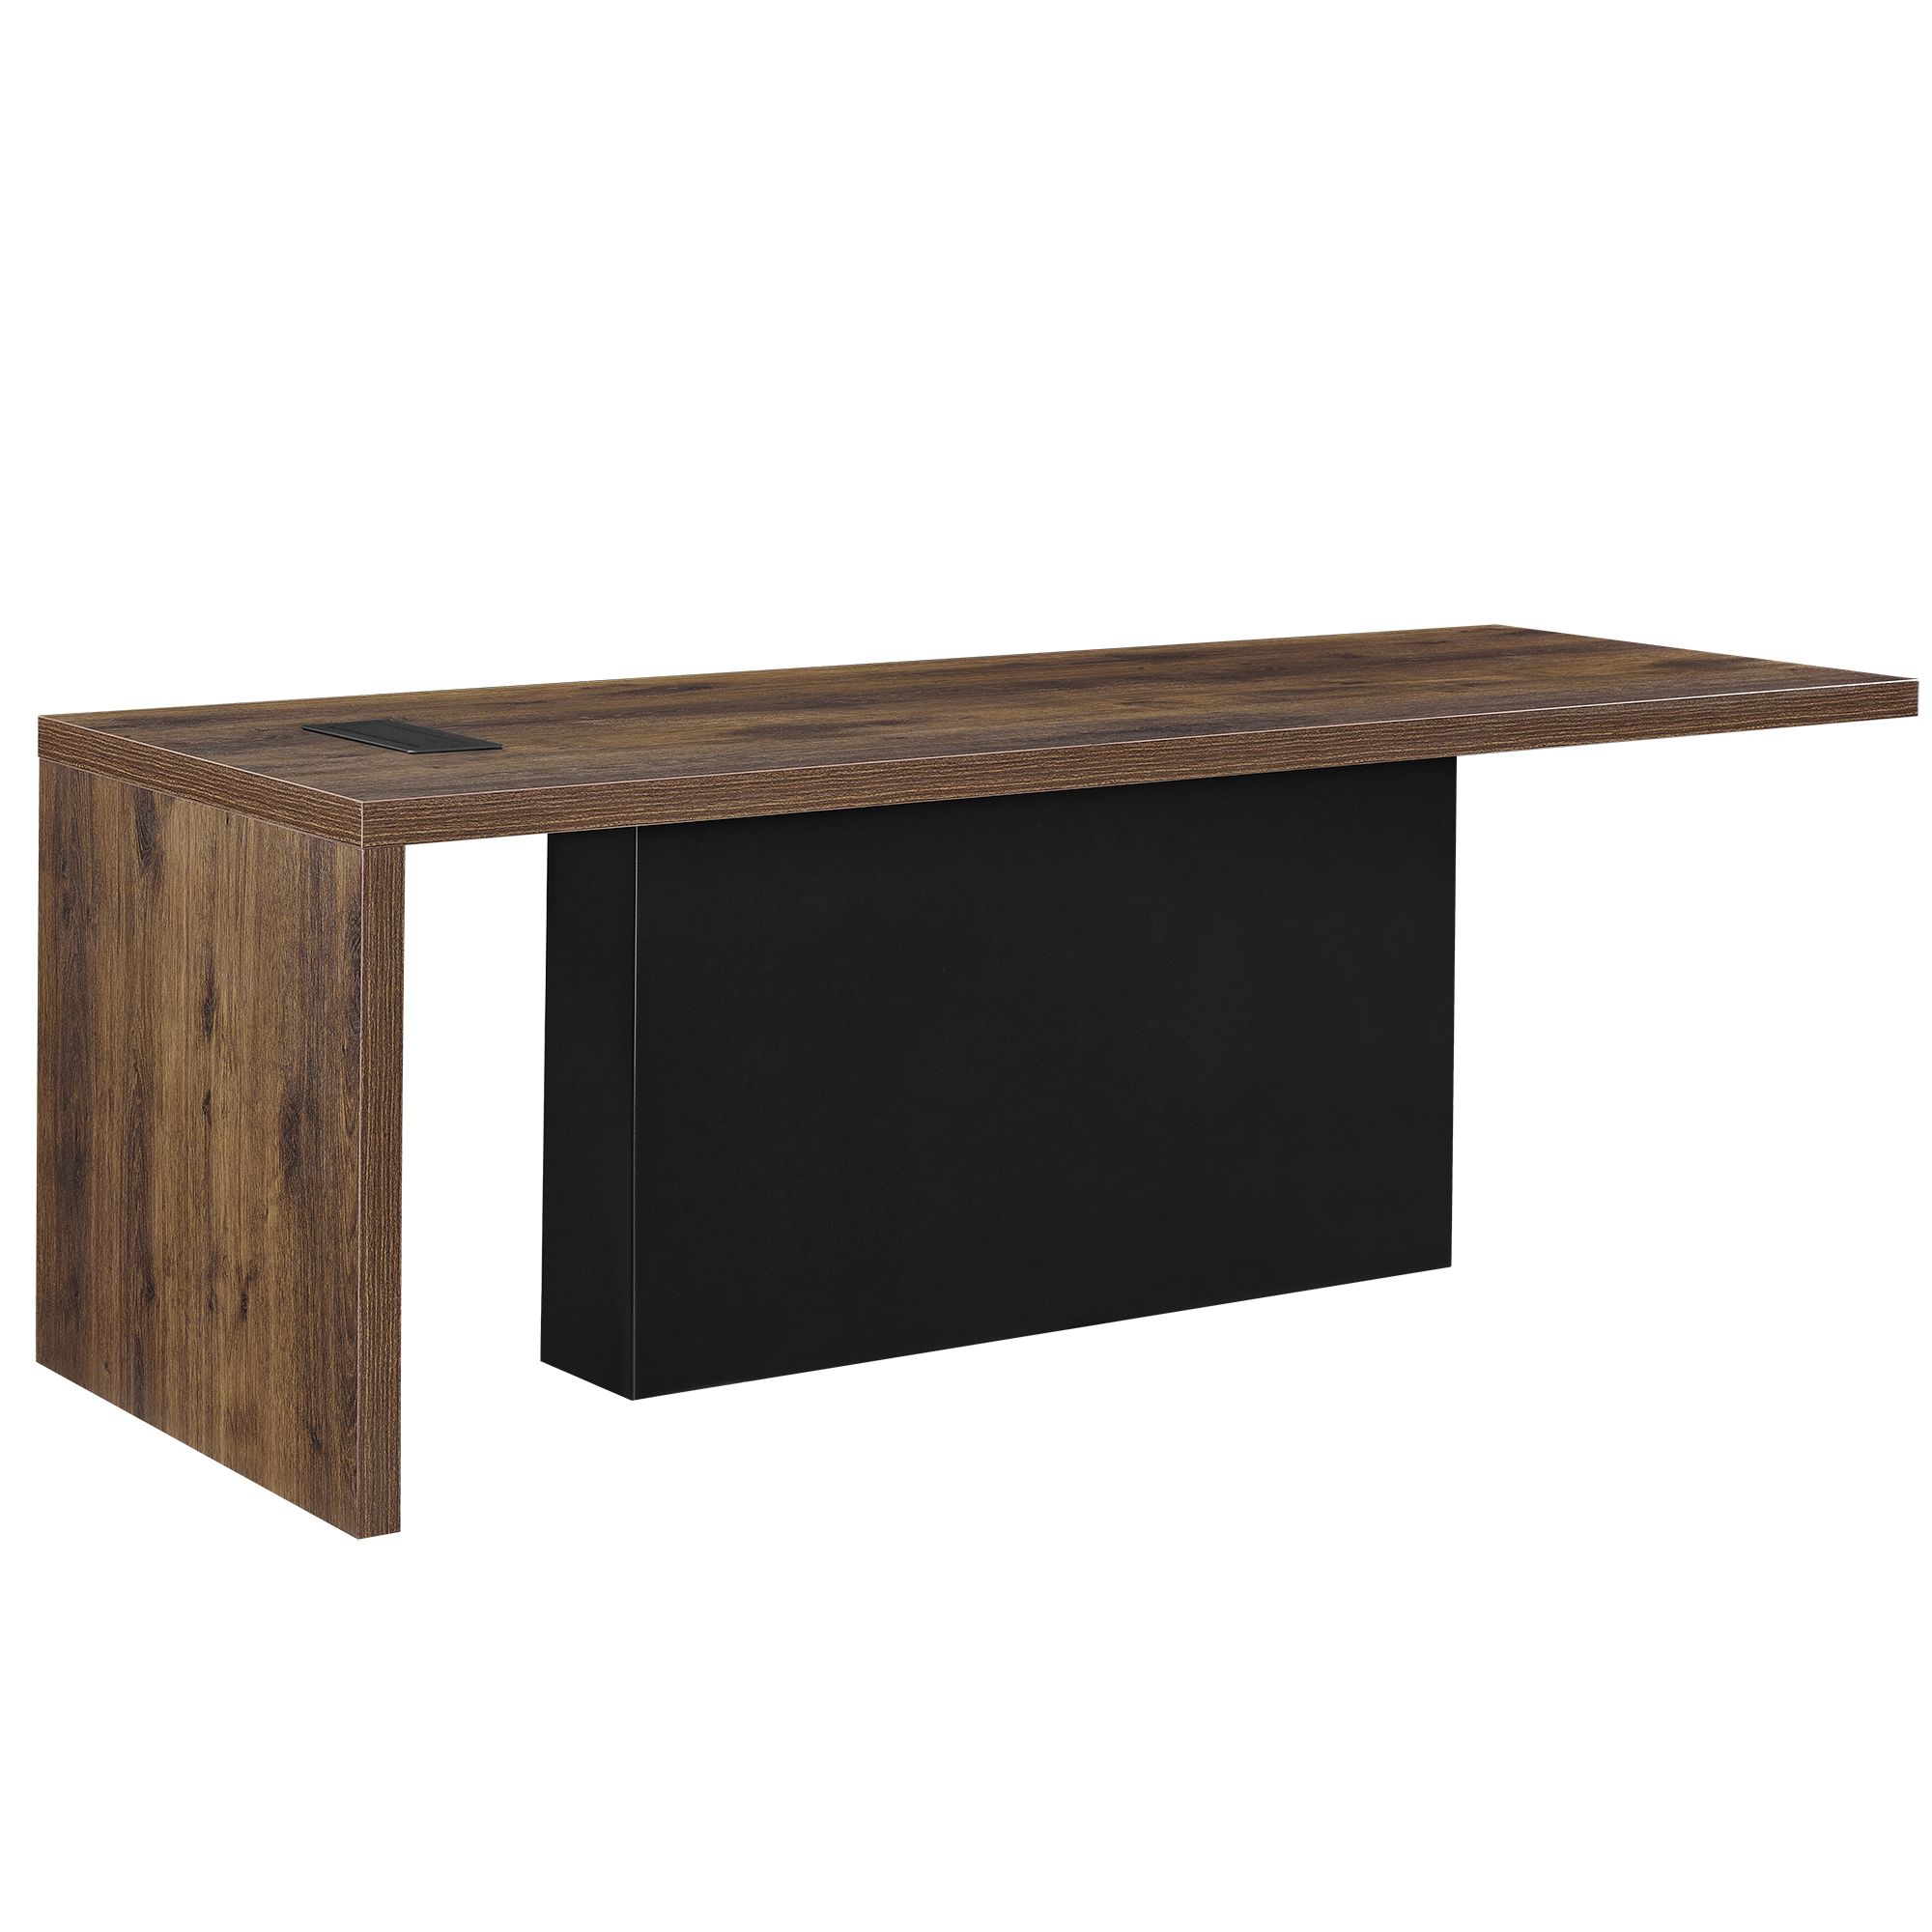 [neu.haus]® Designový kancelářský stůl - imitace tmavého kouřového dubového dřeva - 220 x 80 x 77 cm - H.T. Trade Service GmbH & Co. KG